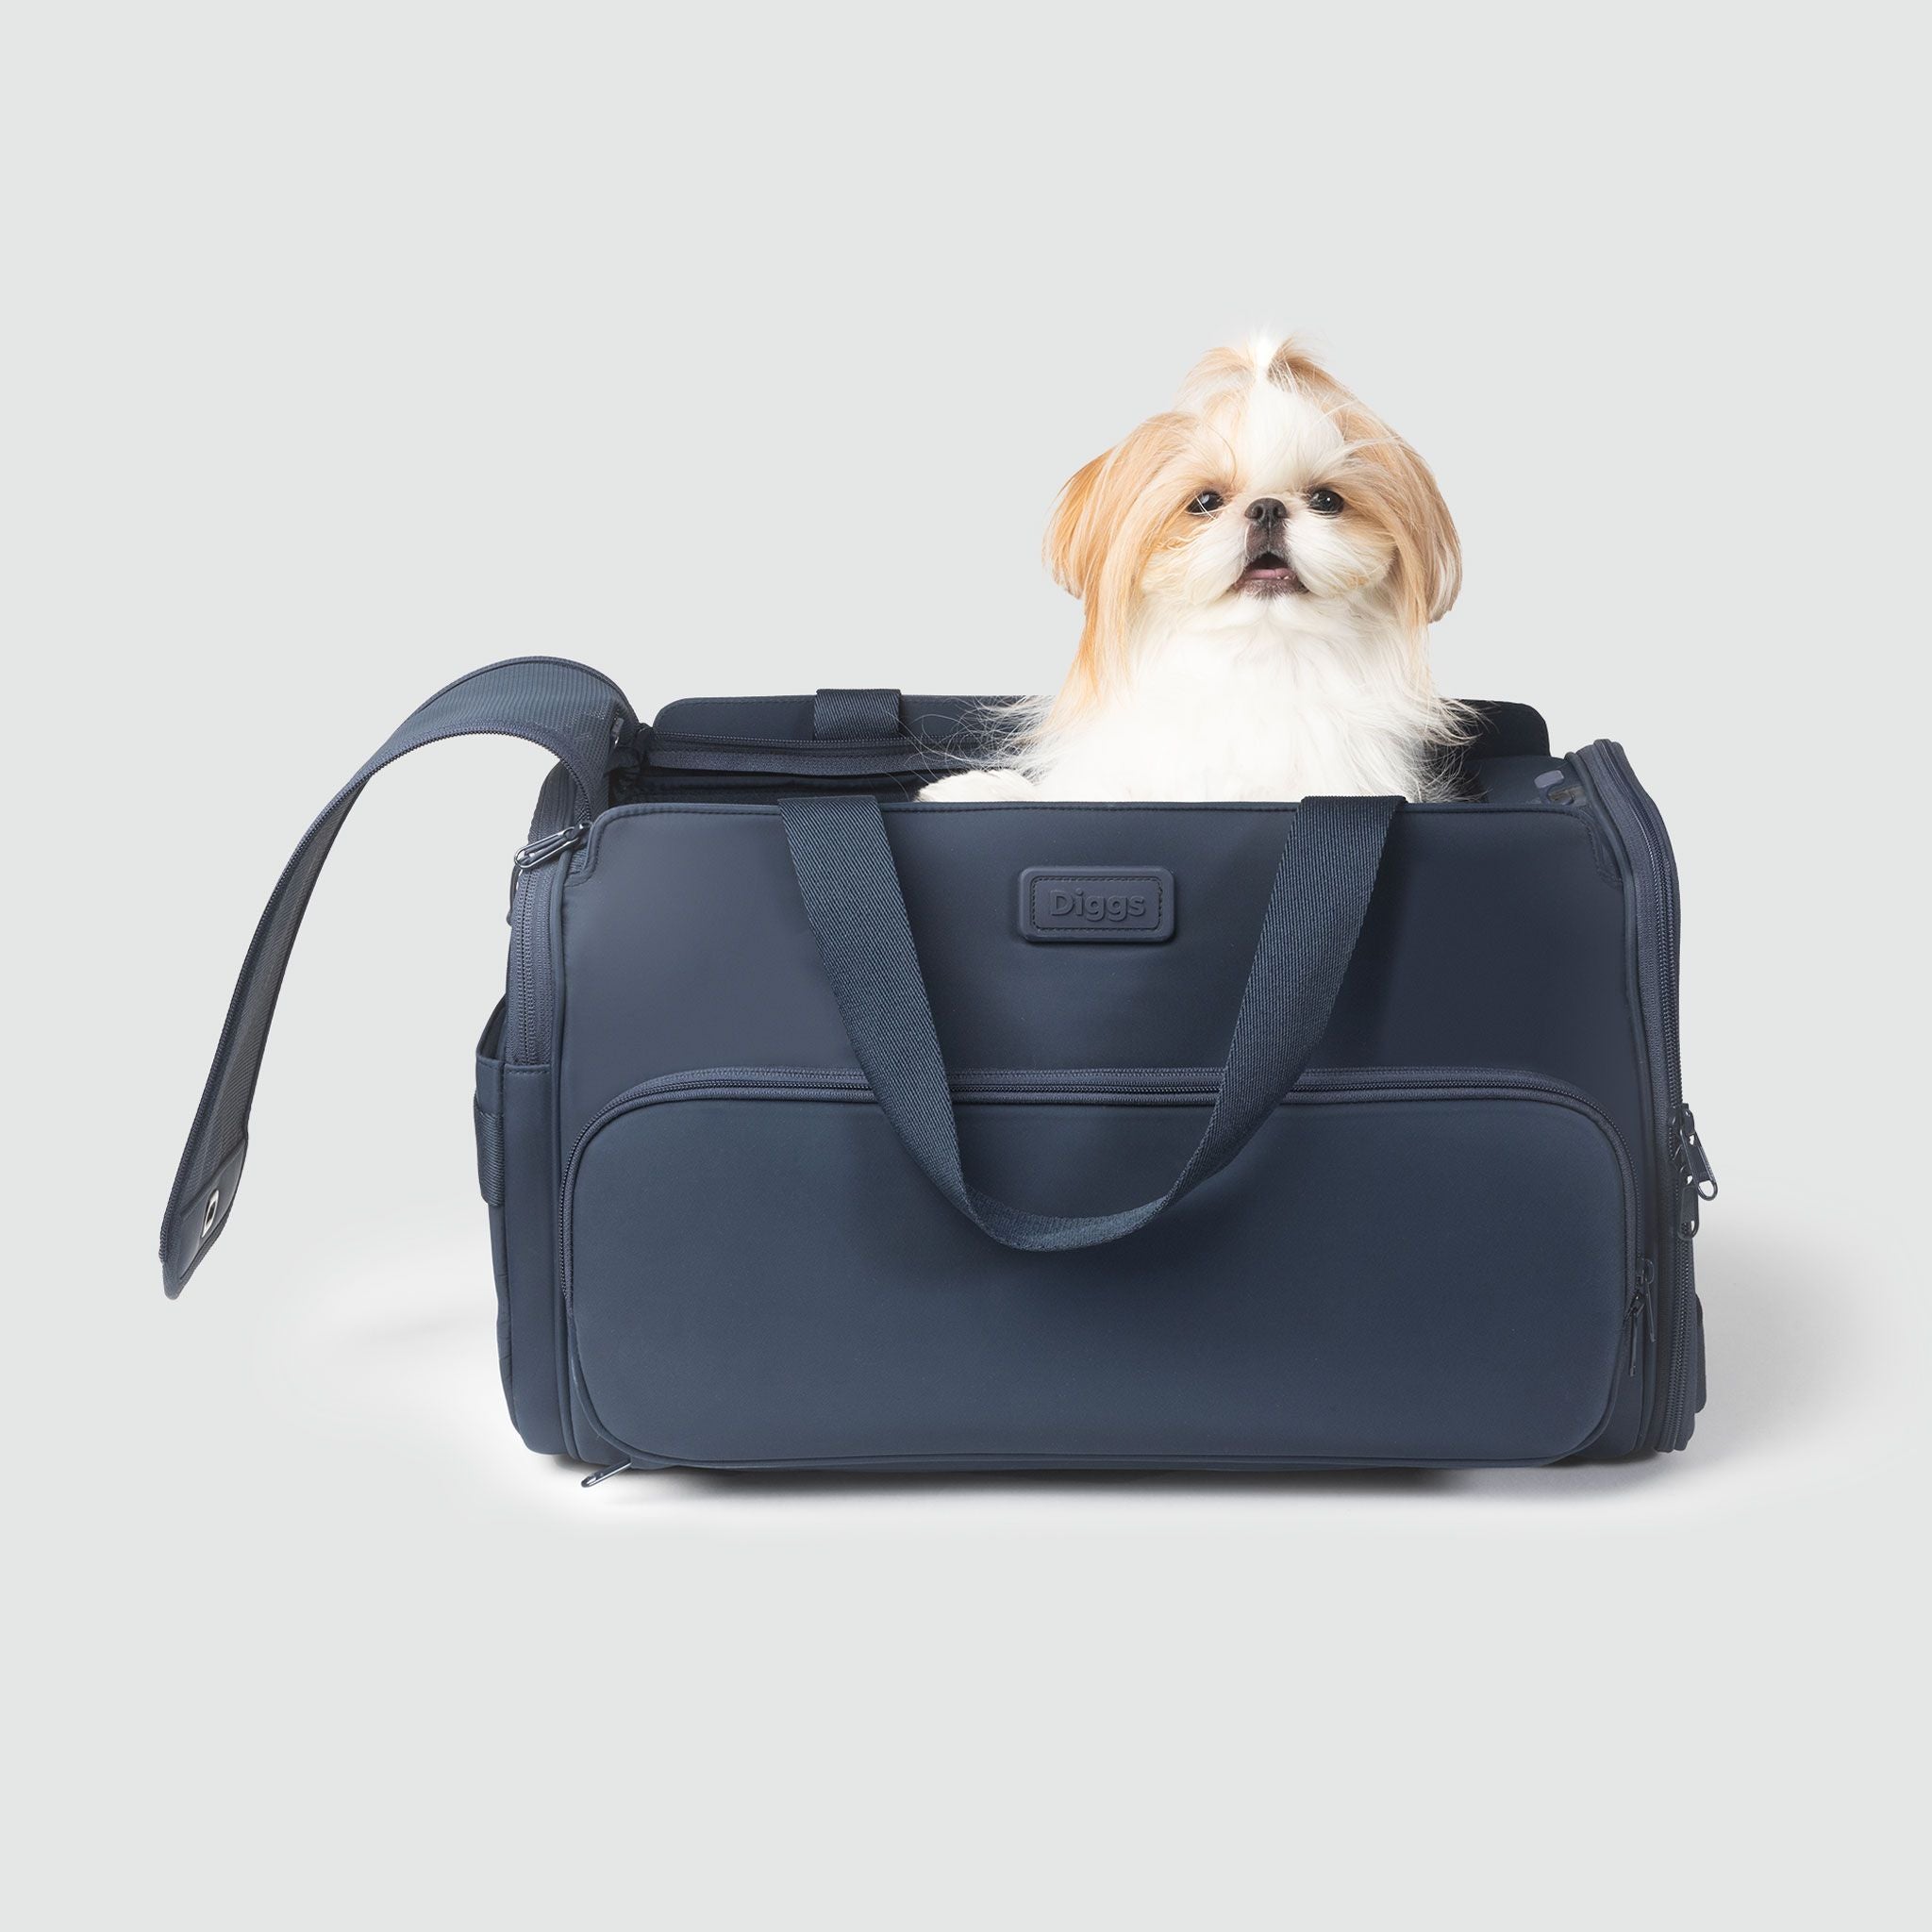 Passenger Travel Dog Carrier